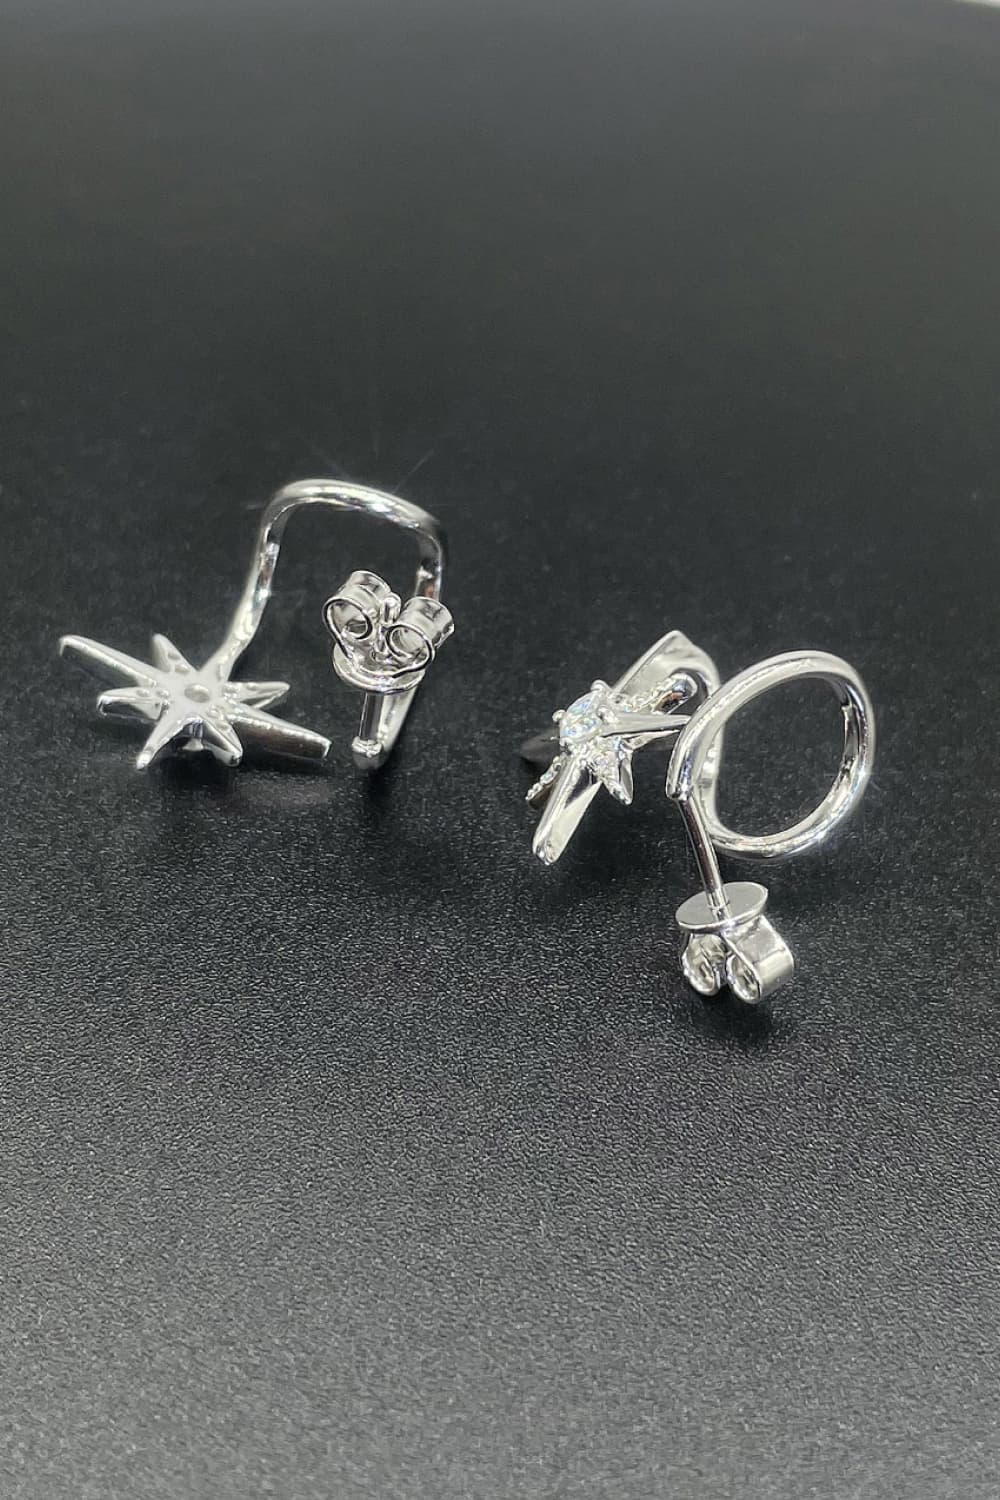 Moissanite Star Rhodium-Plated Earrings